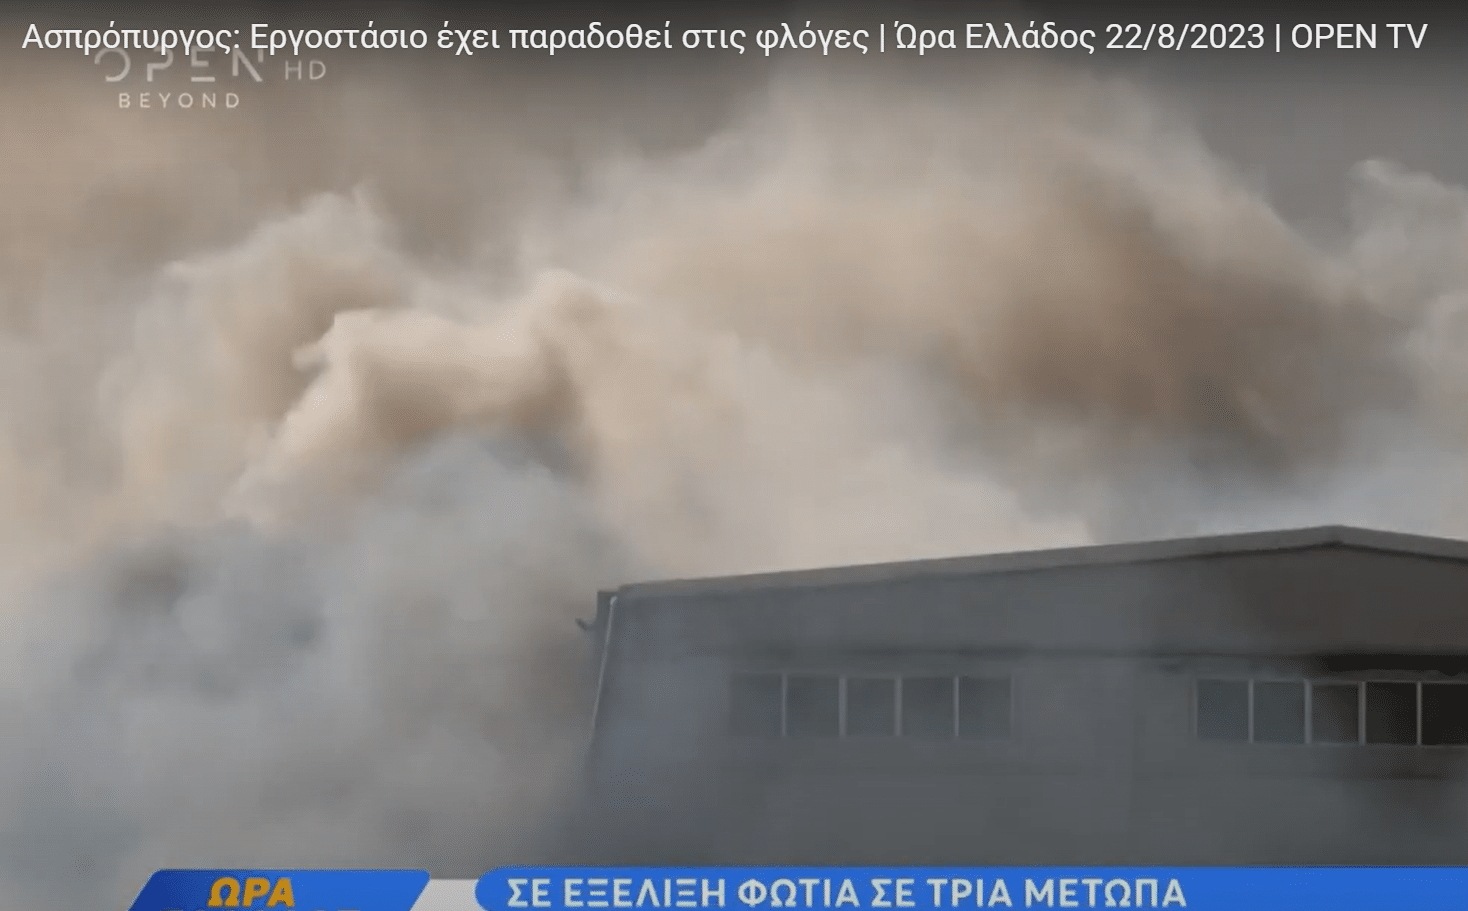 Φωτιά-Ασπρόπυργος: Εργοστάσιο έχει παραδοθεί στις φλόγες - Απανωτές εκκενώσεις οικισμών